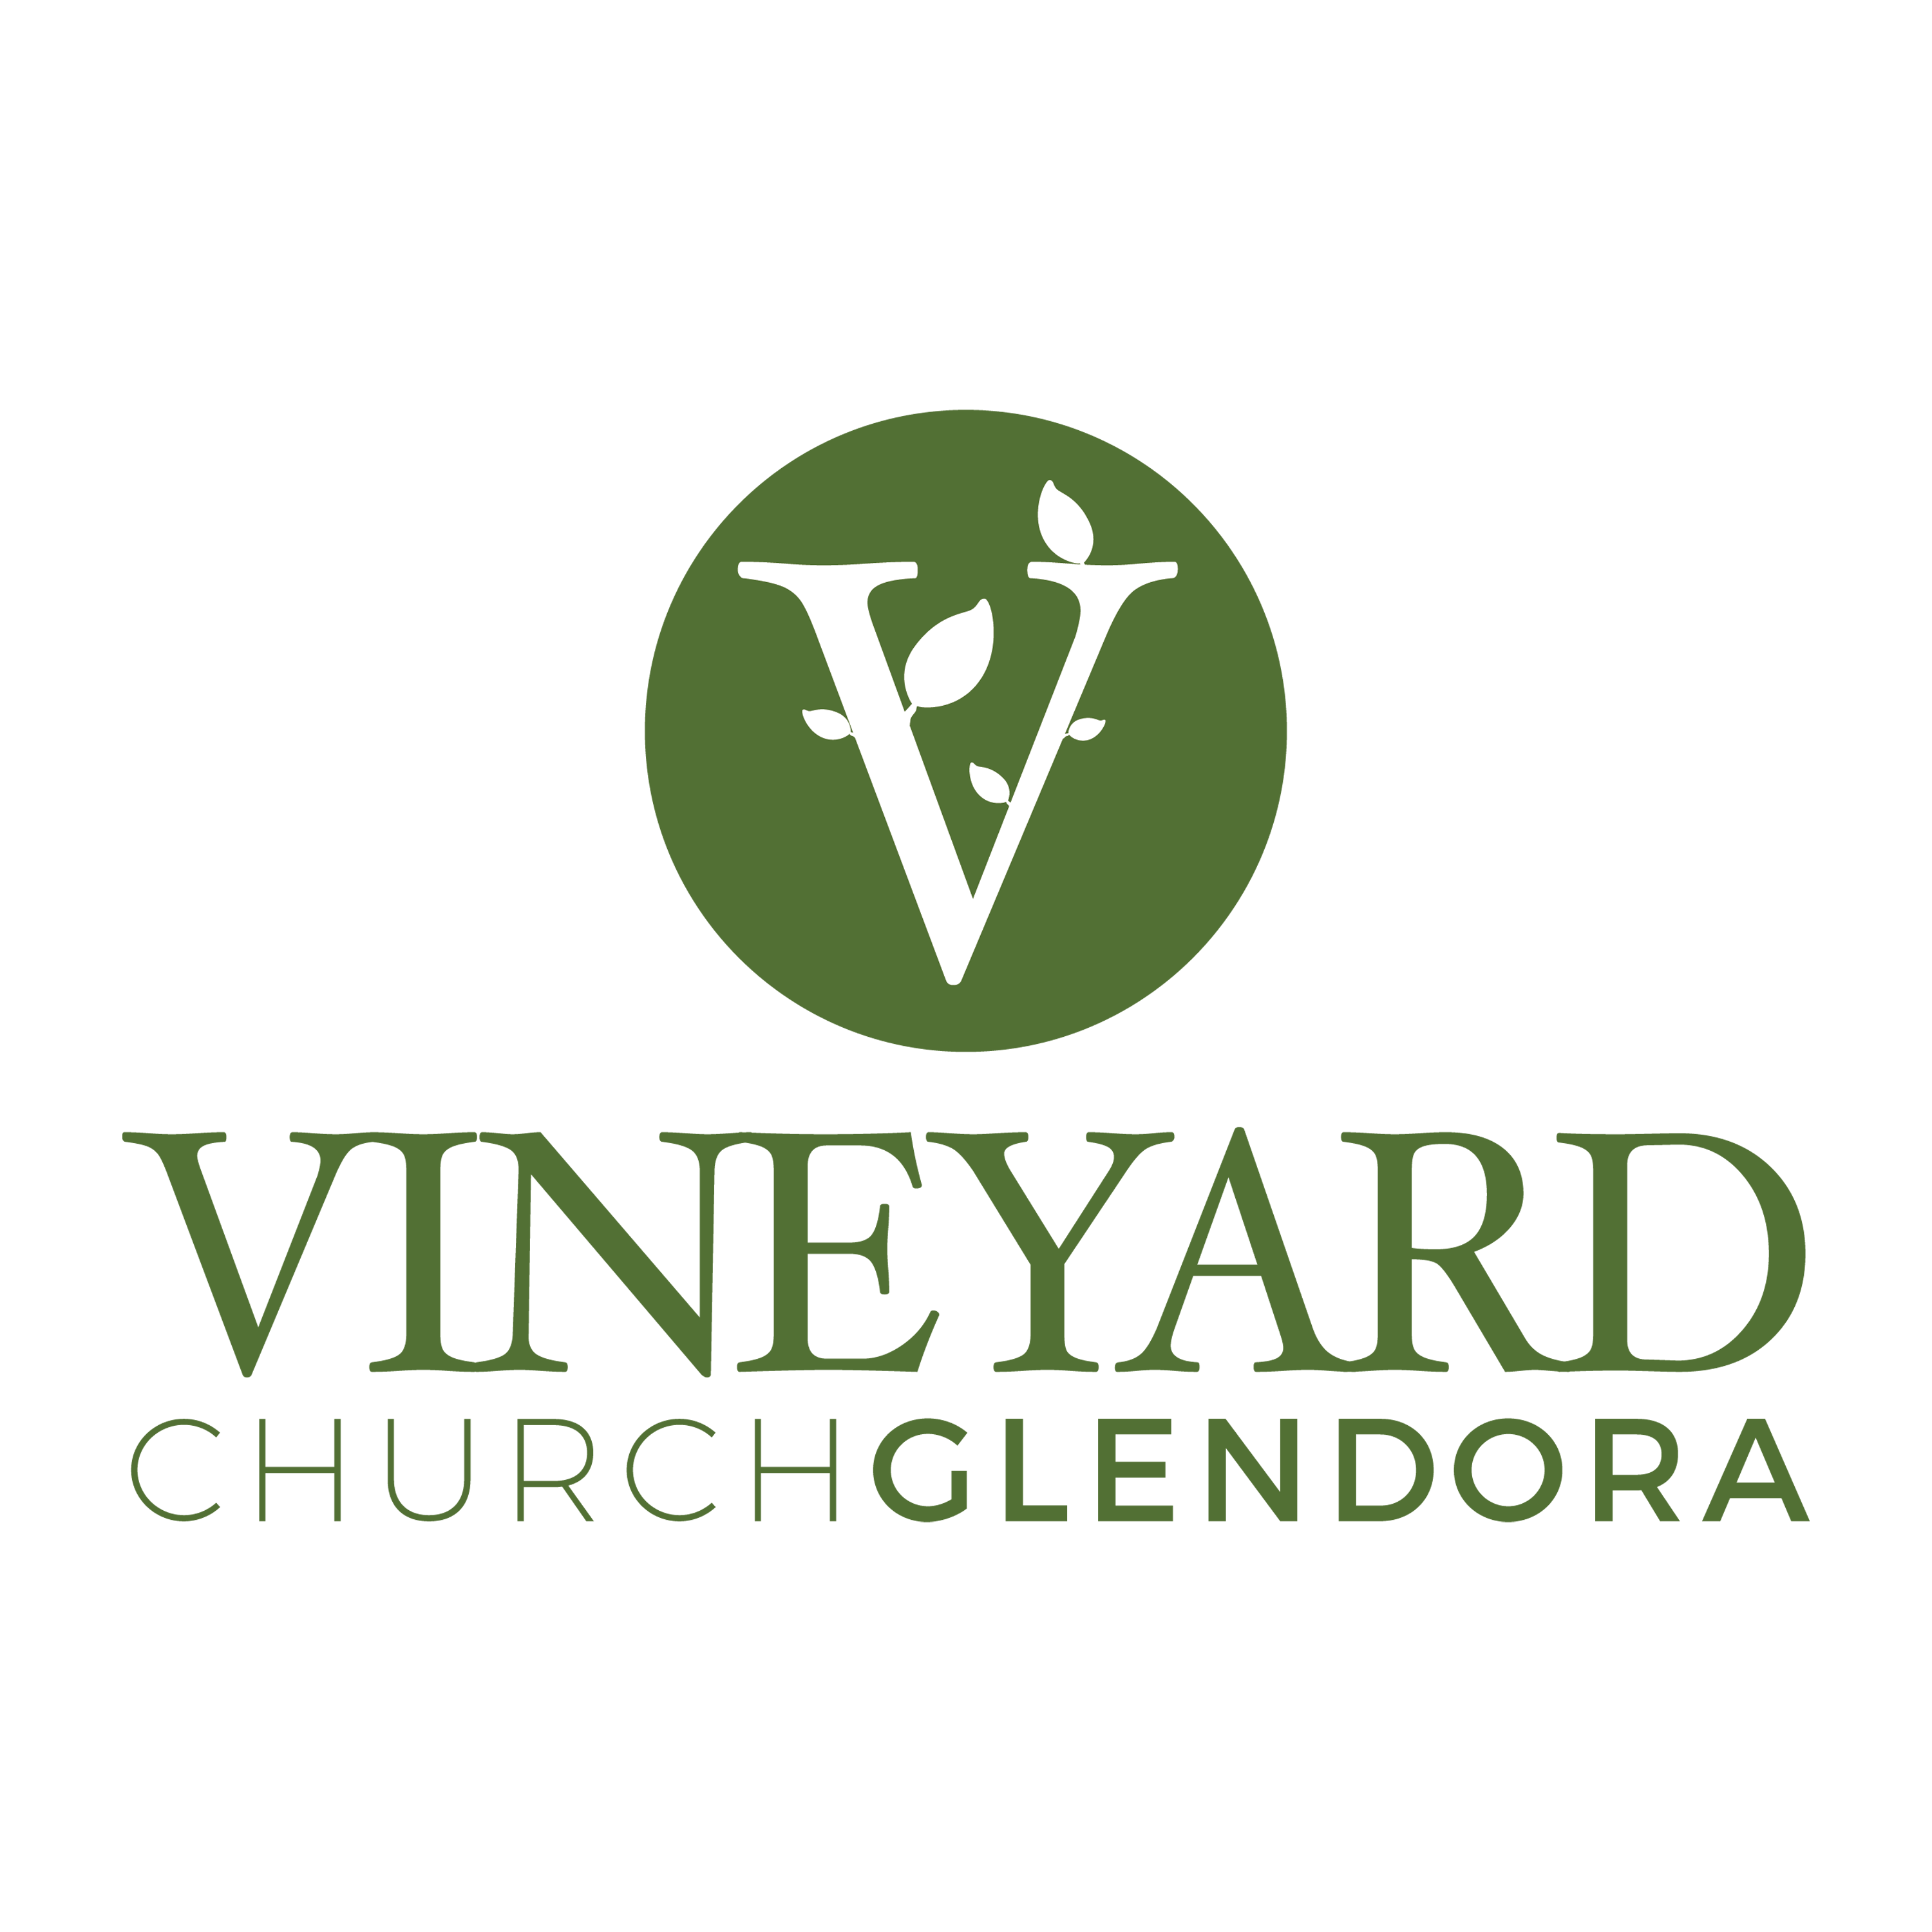 Vineyard Church Glendora